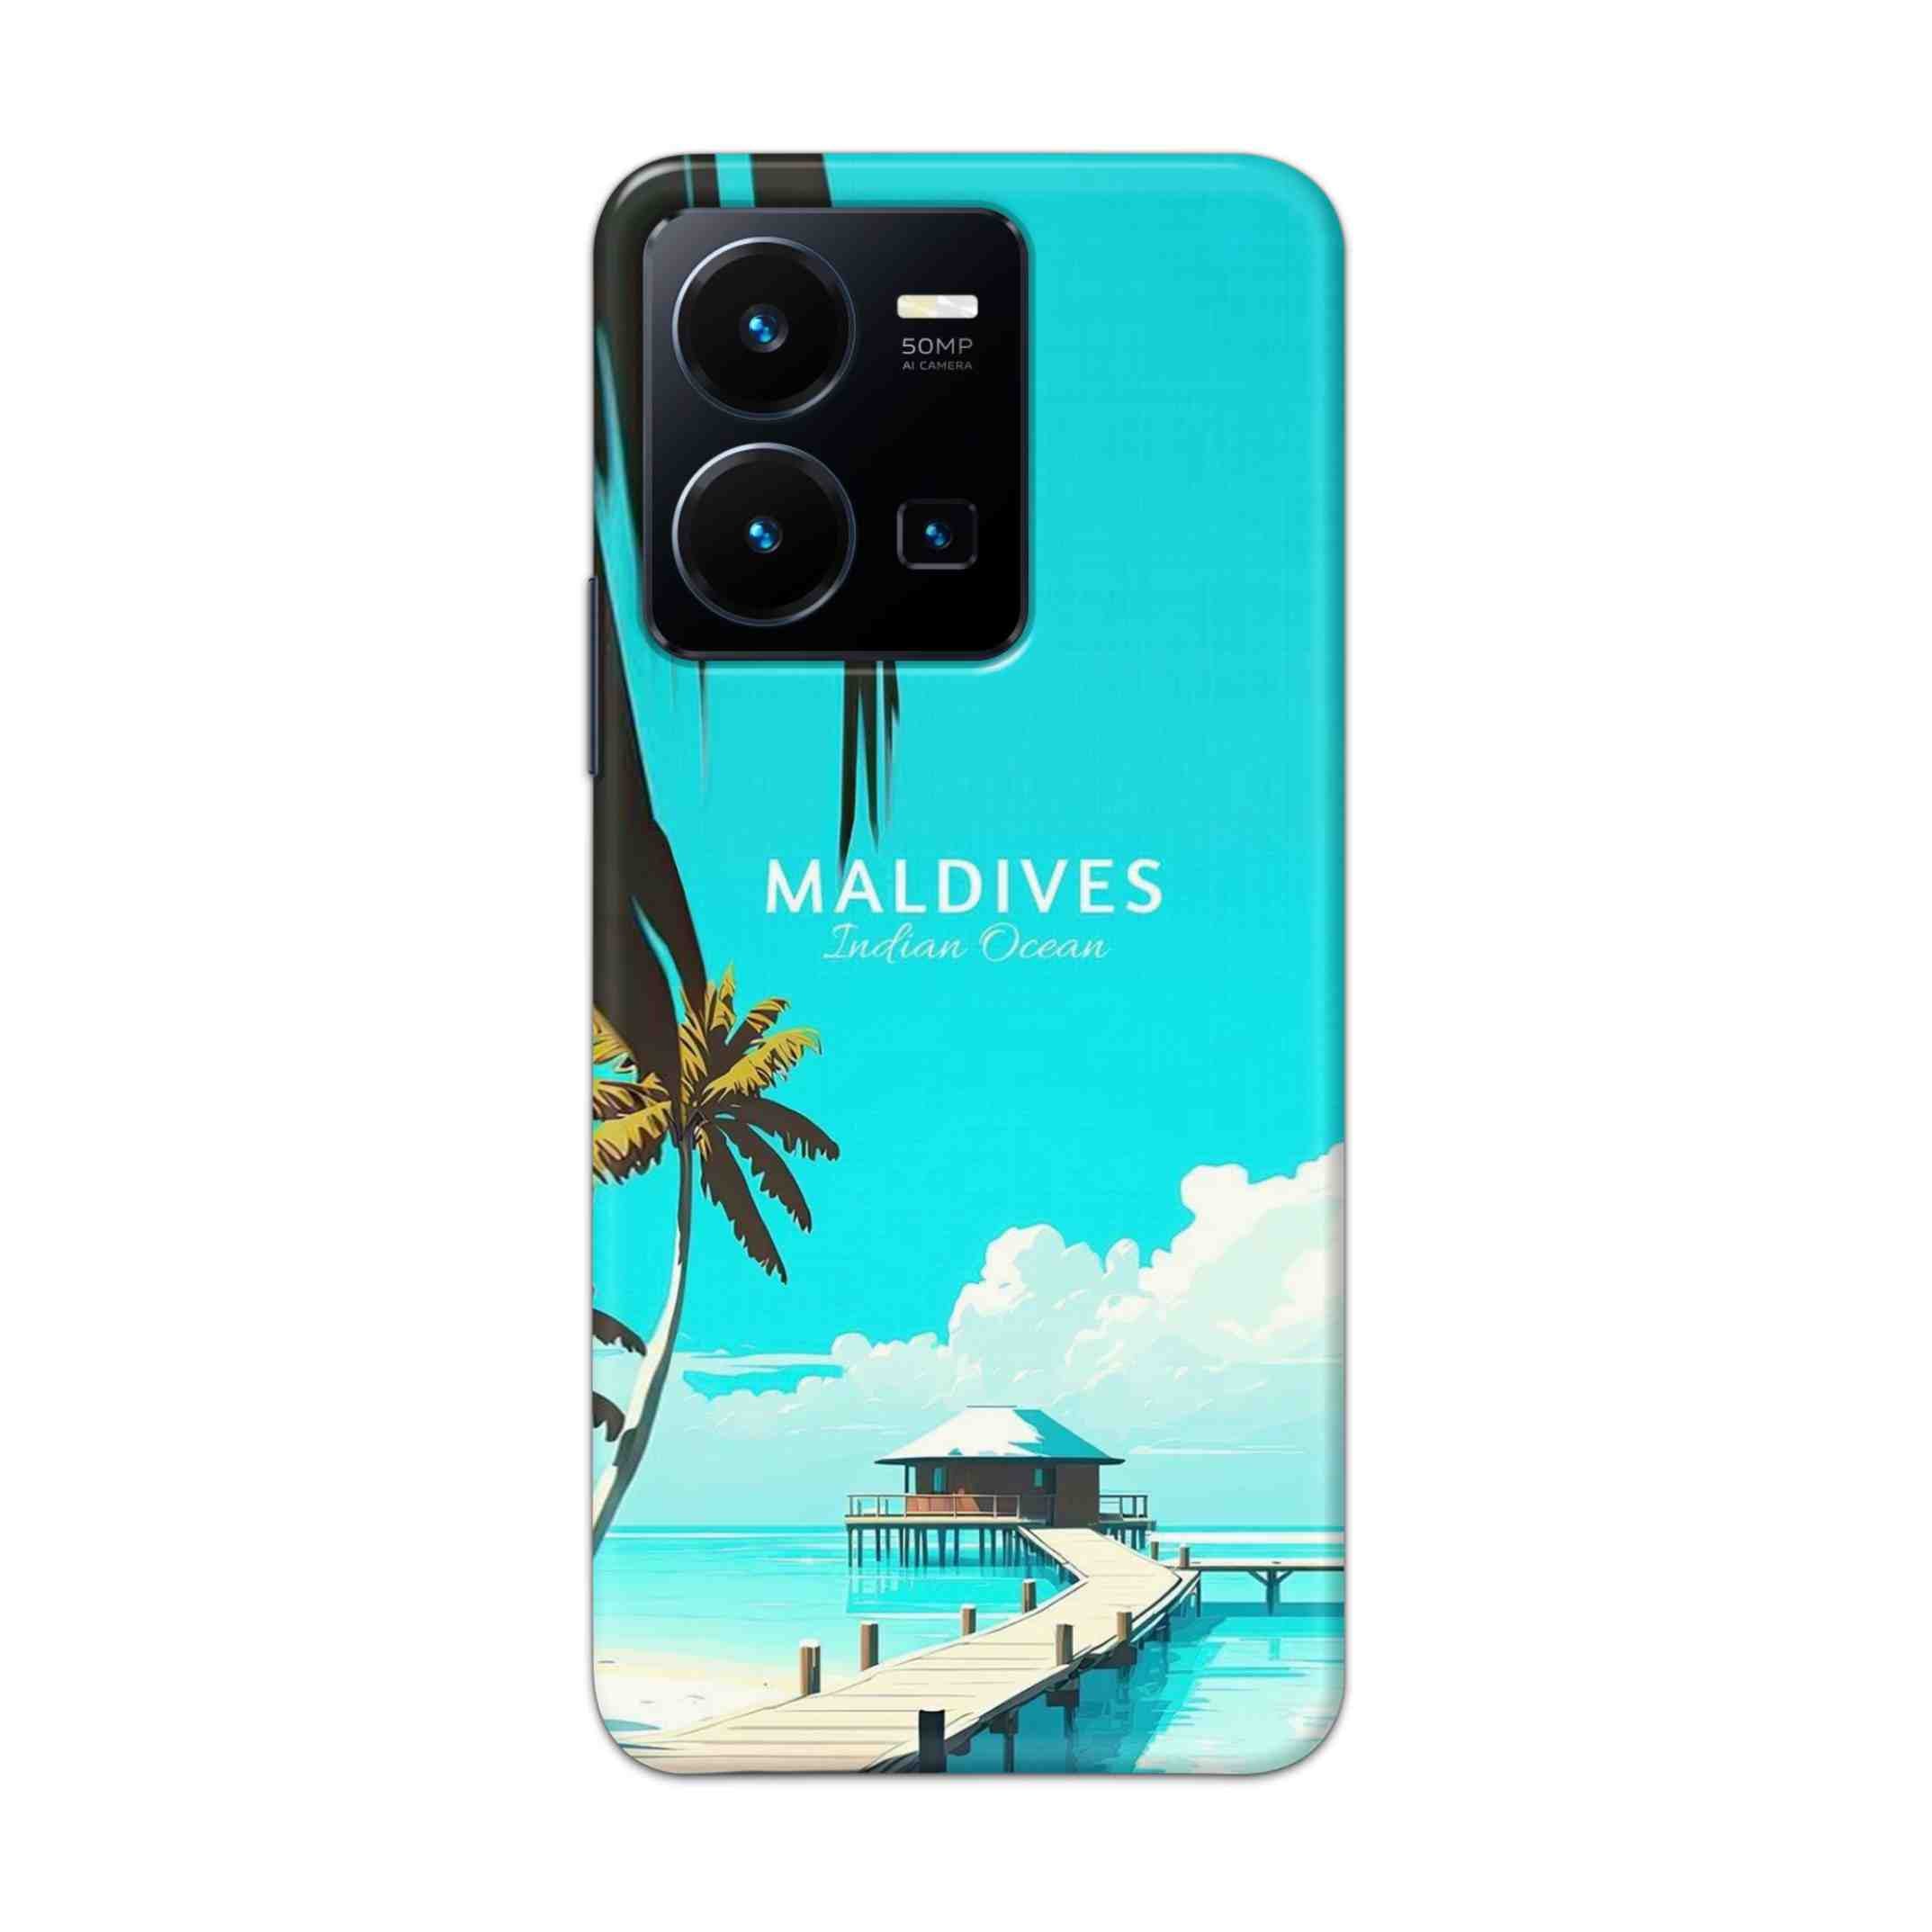 Buy Maldives Hard Back Mobile Phone Case Cover For Vivo Y35 2022 Online